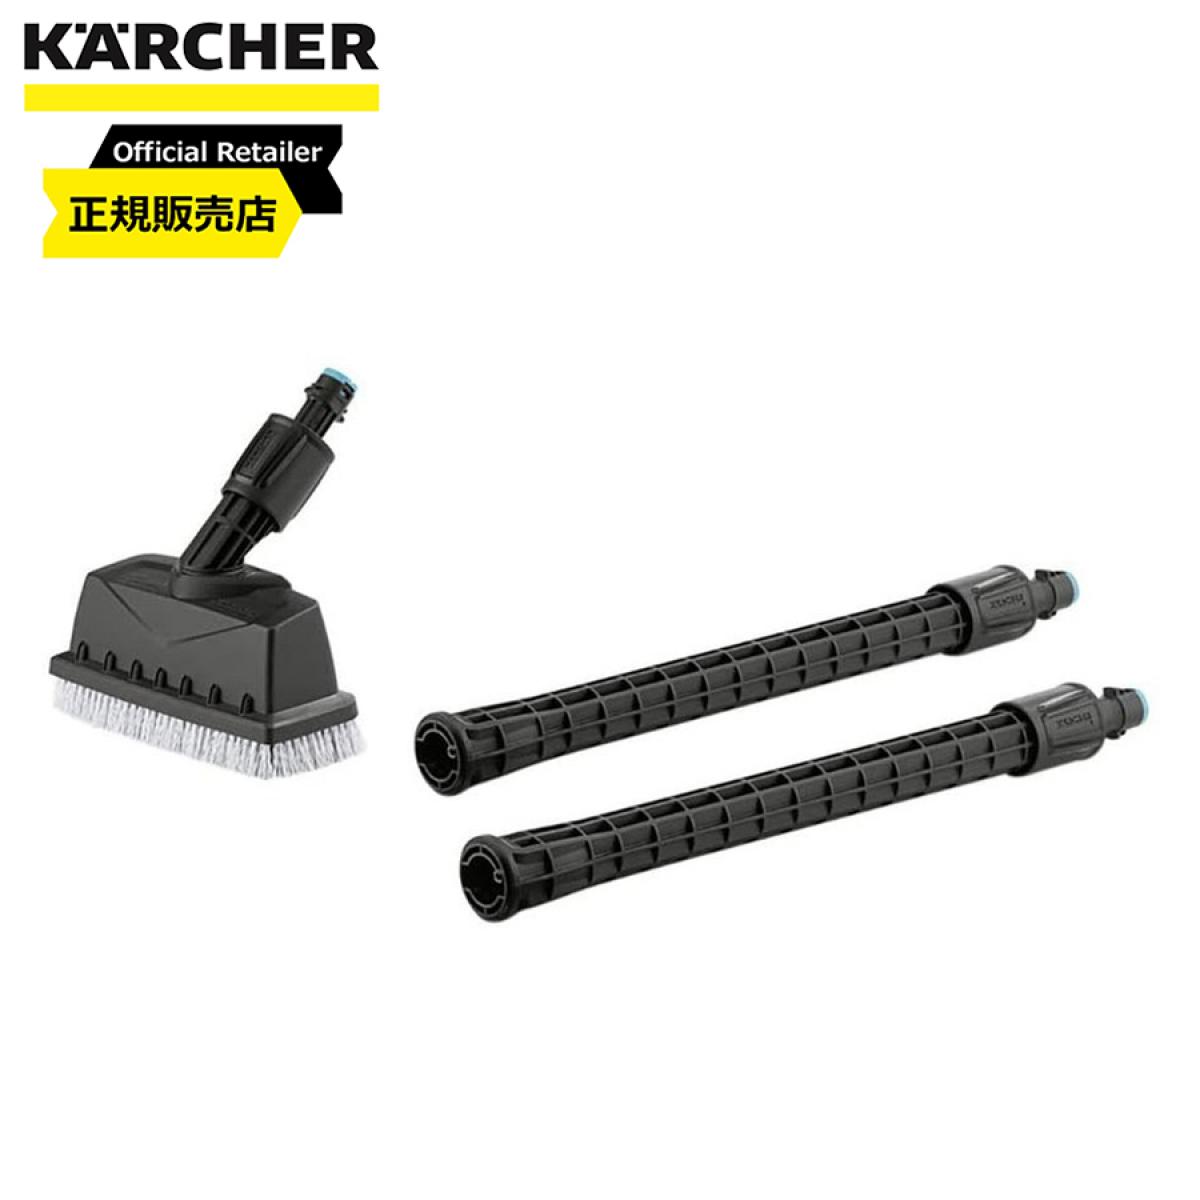 ケルヒャー(KARCHER) デッキ-クリーナー PS20 (KHB5用) 2.644-018.0 ハンドヘルド専用デッキクリーナー PS 20 高圧洗浄機用アクセサリー